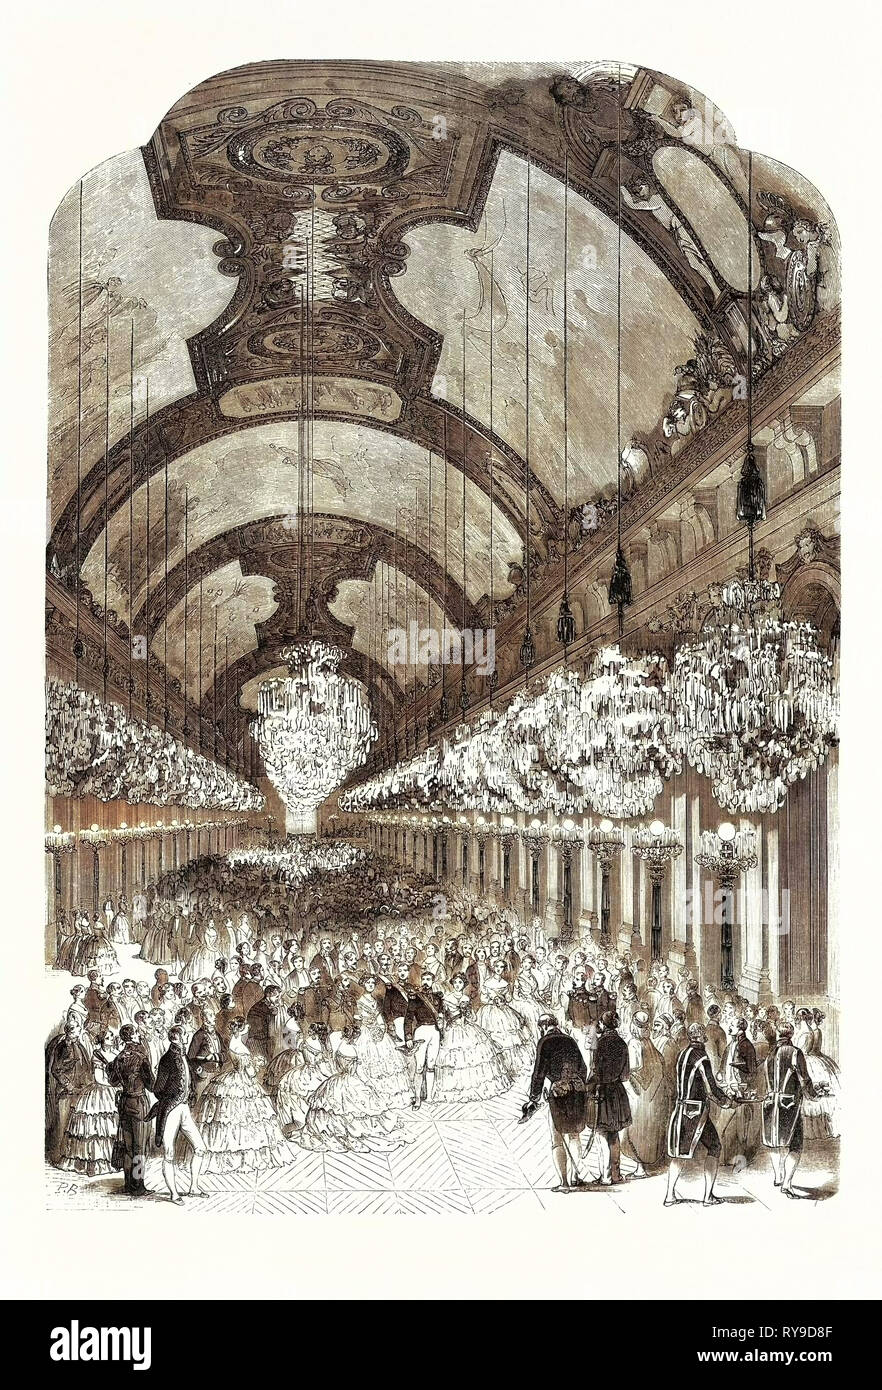 Eingang des Ll. Mm. Royals und Imperiale im Spiegelsaal des Schlosses von Versailles, 25. August 1855, Frankreich. Gravur Stockfoto